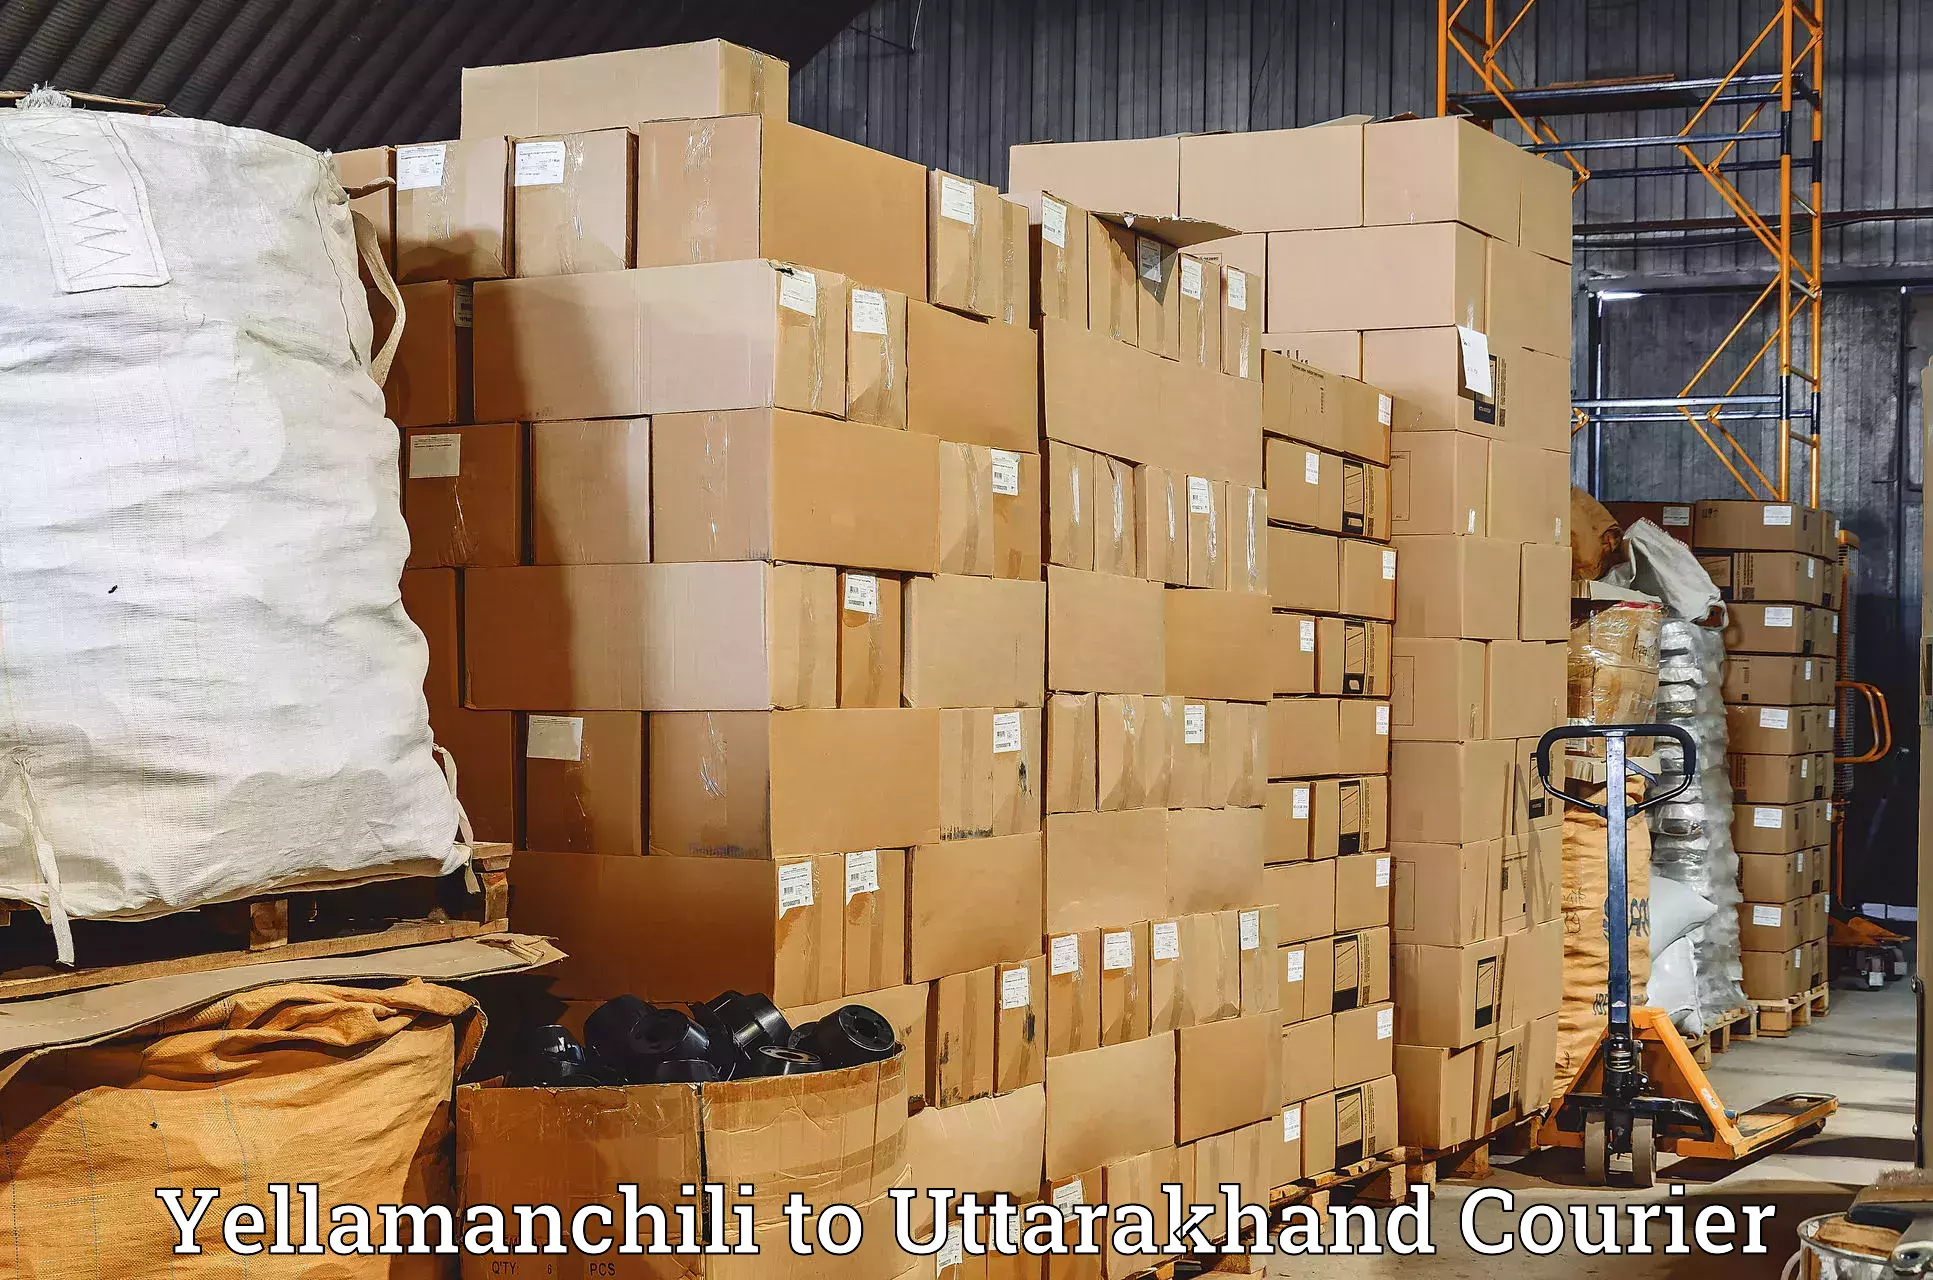 Supply chain efficiency in Yellamanchili to Rishikesh